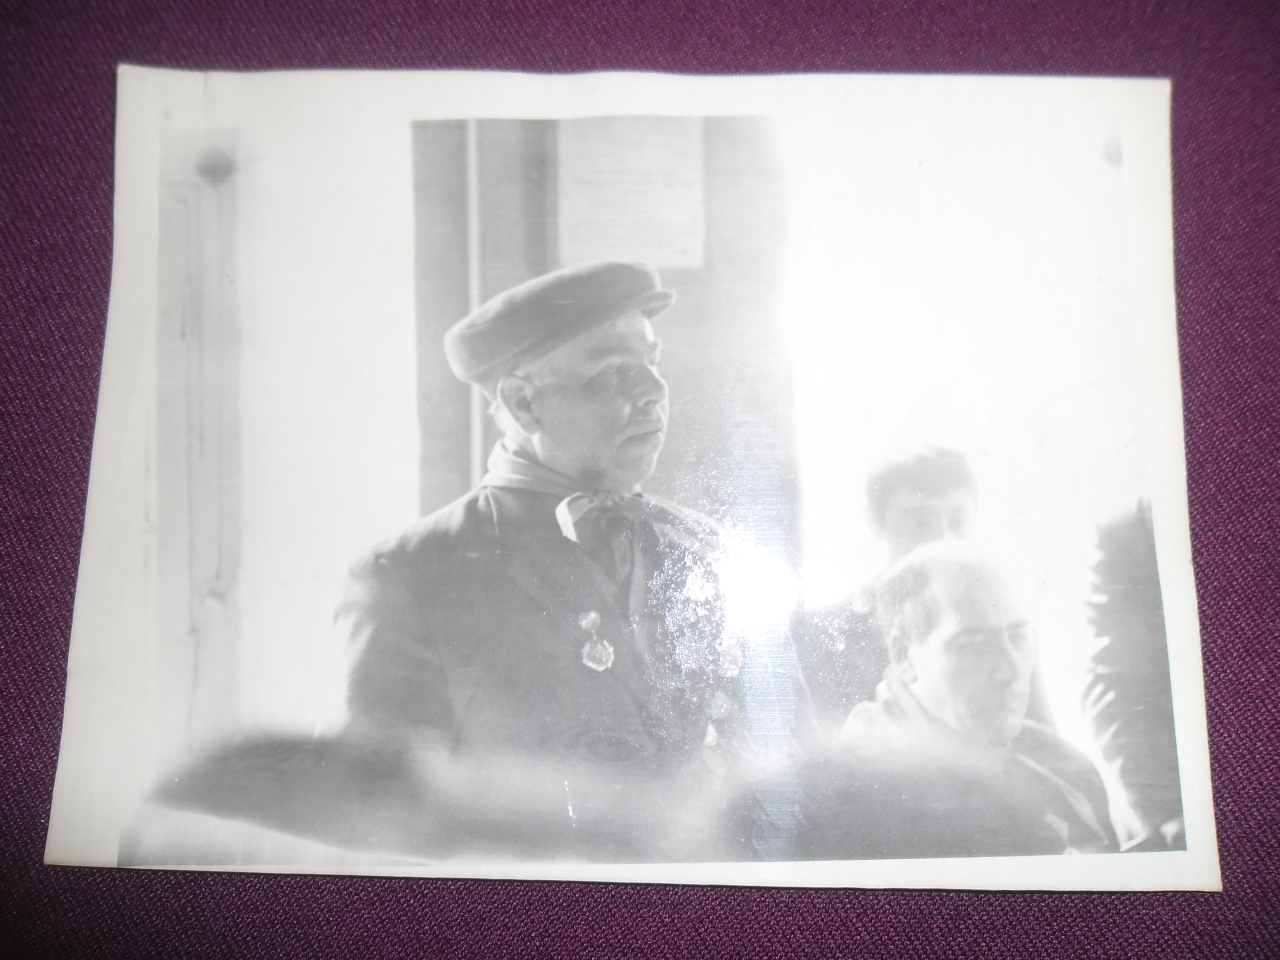 Միլիտոն Հովհաննիսյանը  (Հայրենական պատերազմի մասնակից) ելույթի պահին